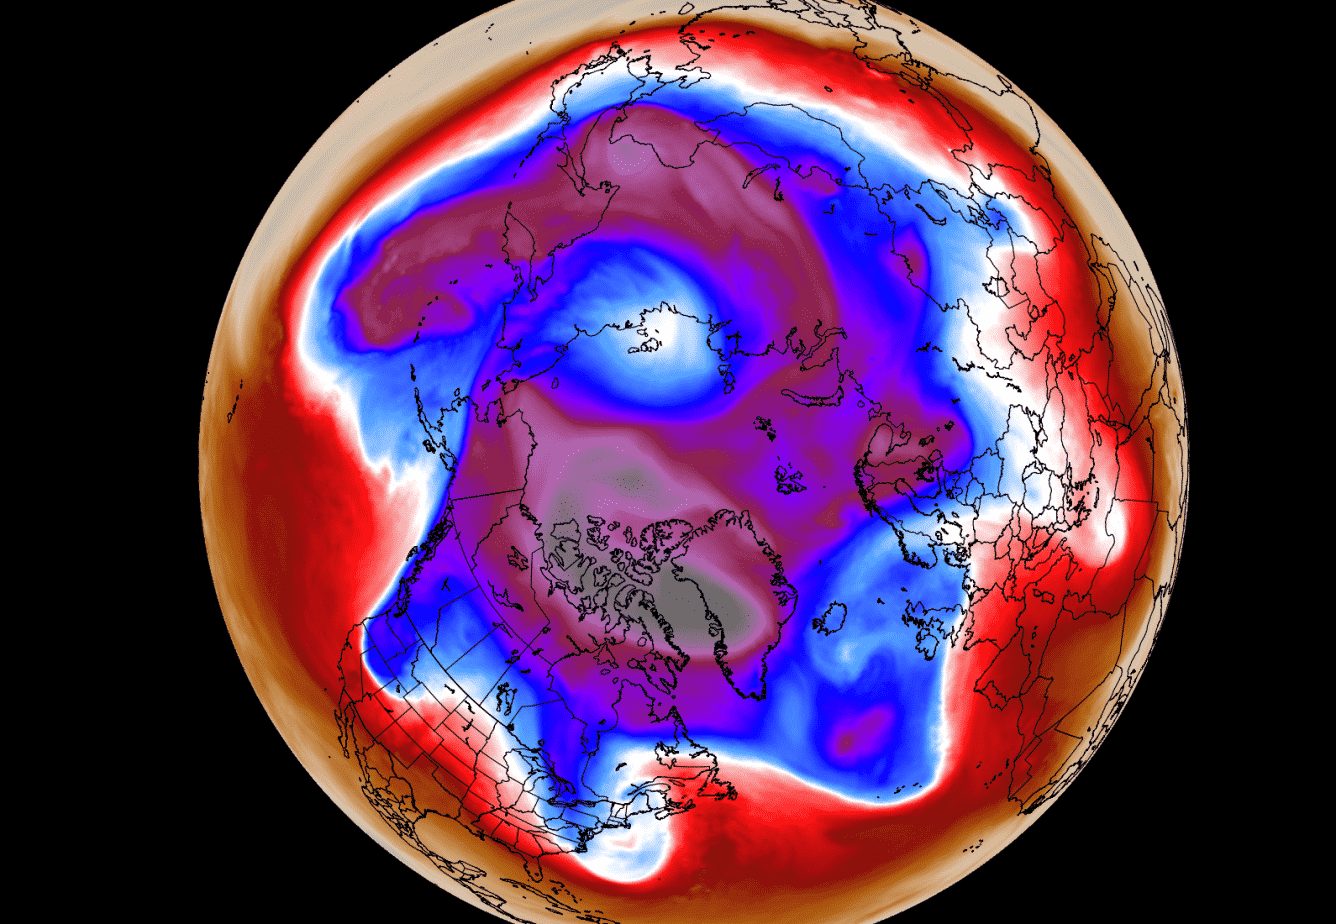 polar-vortex-weather-winter-season-update-united-states-europe-north-hemisphere-cold-pressure-pattern